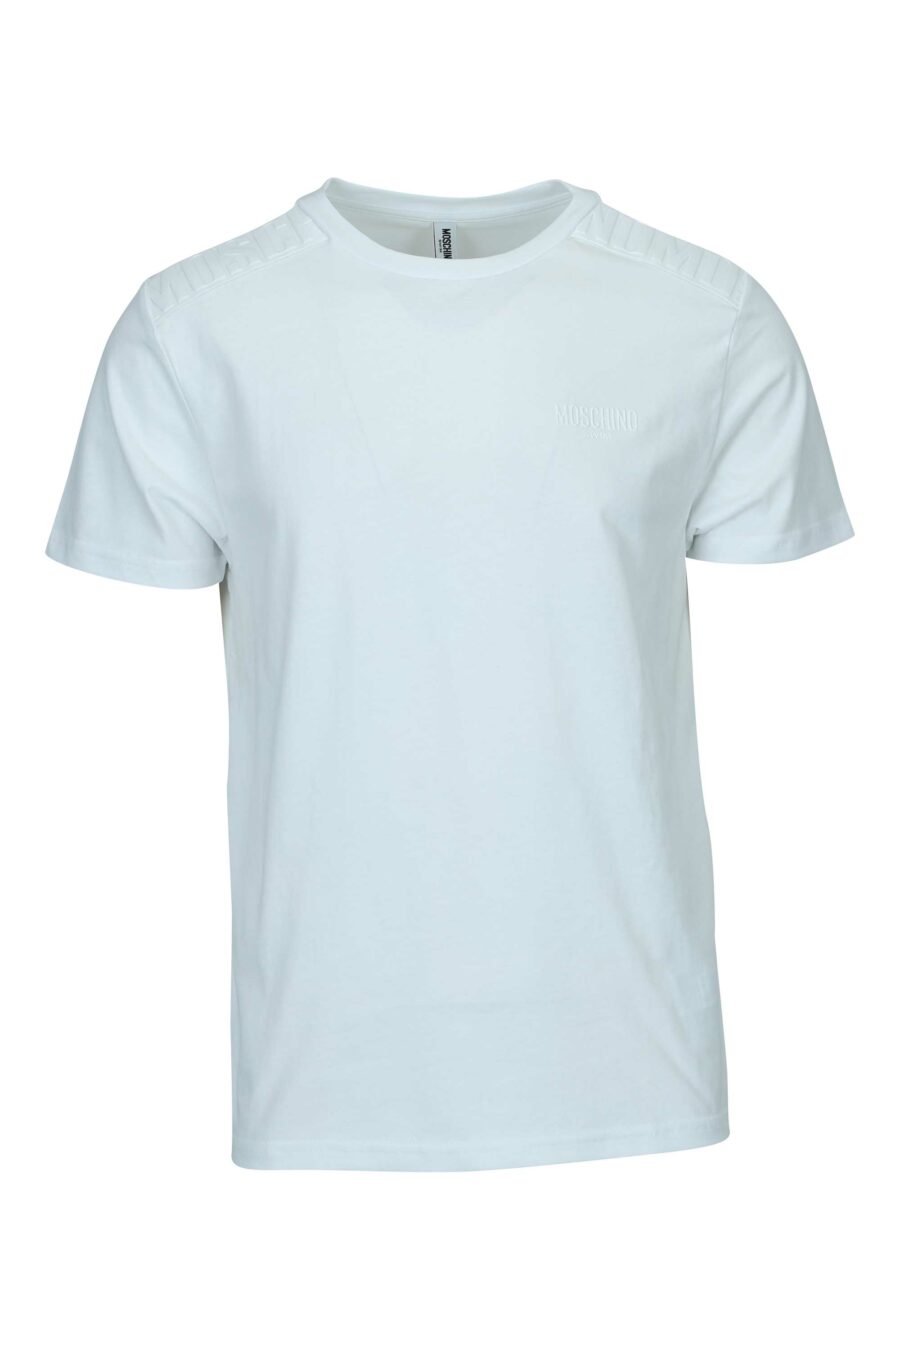 T-shirt blanc avec logo en caoutchouc monochrome sur les épaules - 667113671932